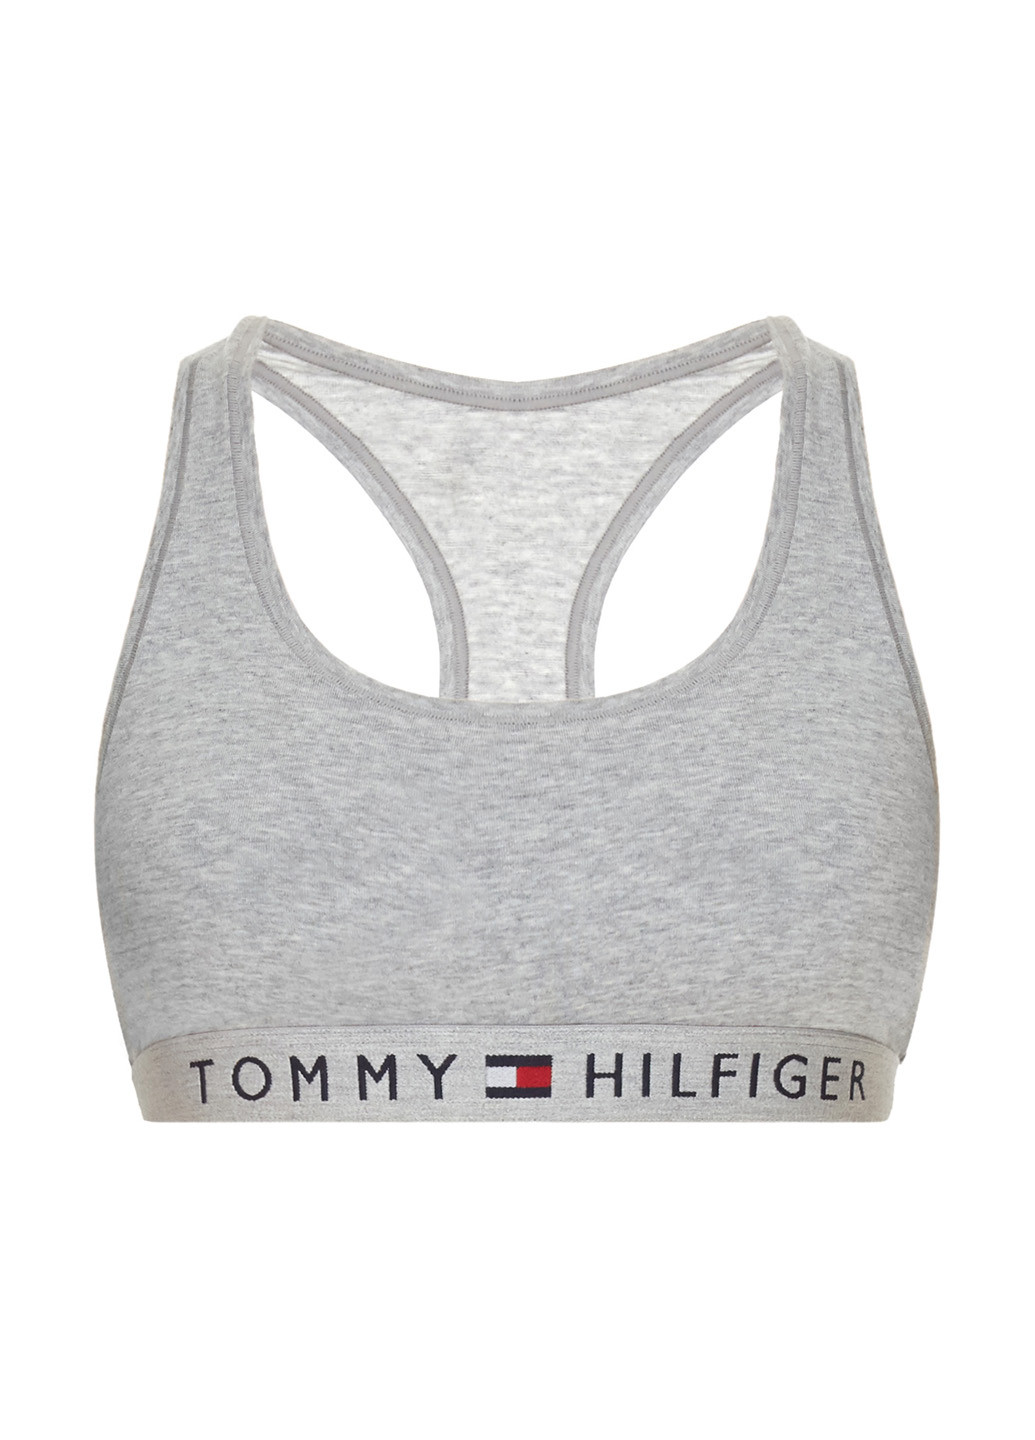 Серый спортивный бюстгальтер Tommy Hilfiger без косточек трикотаж, хлопок